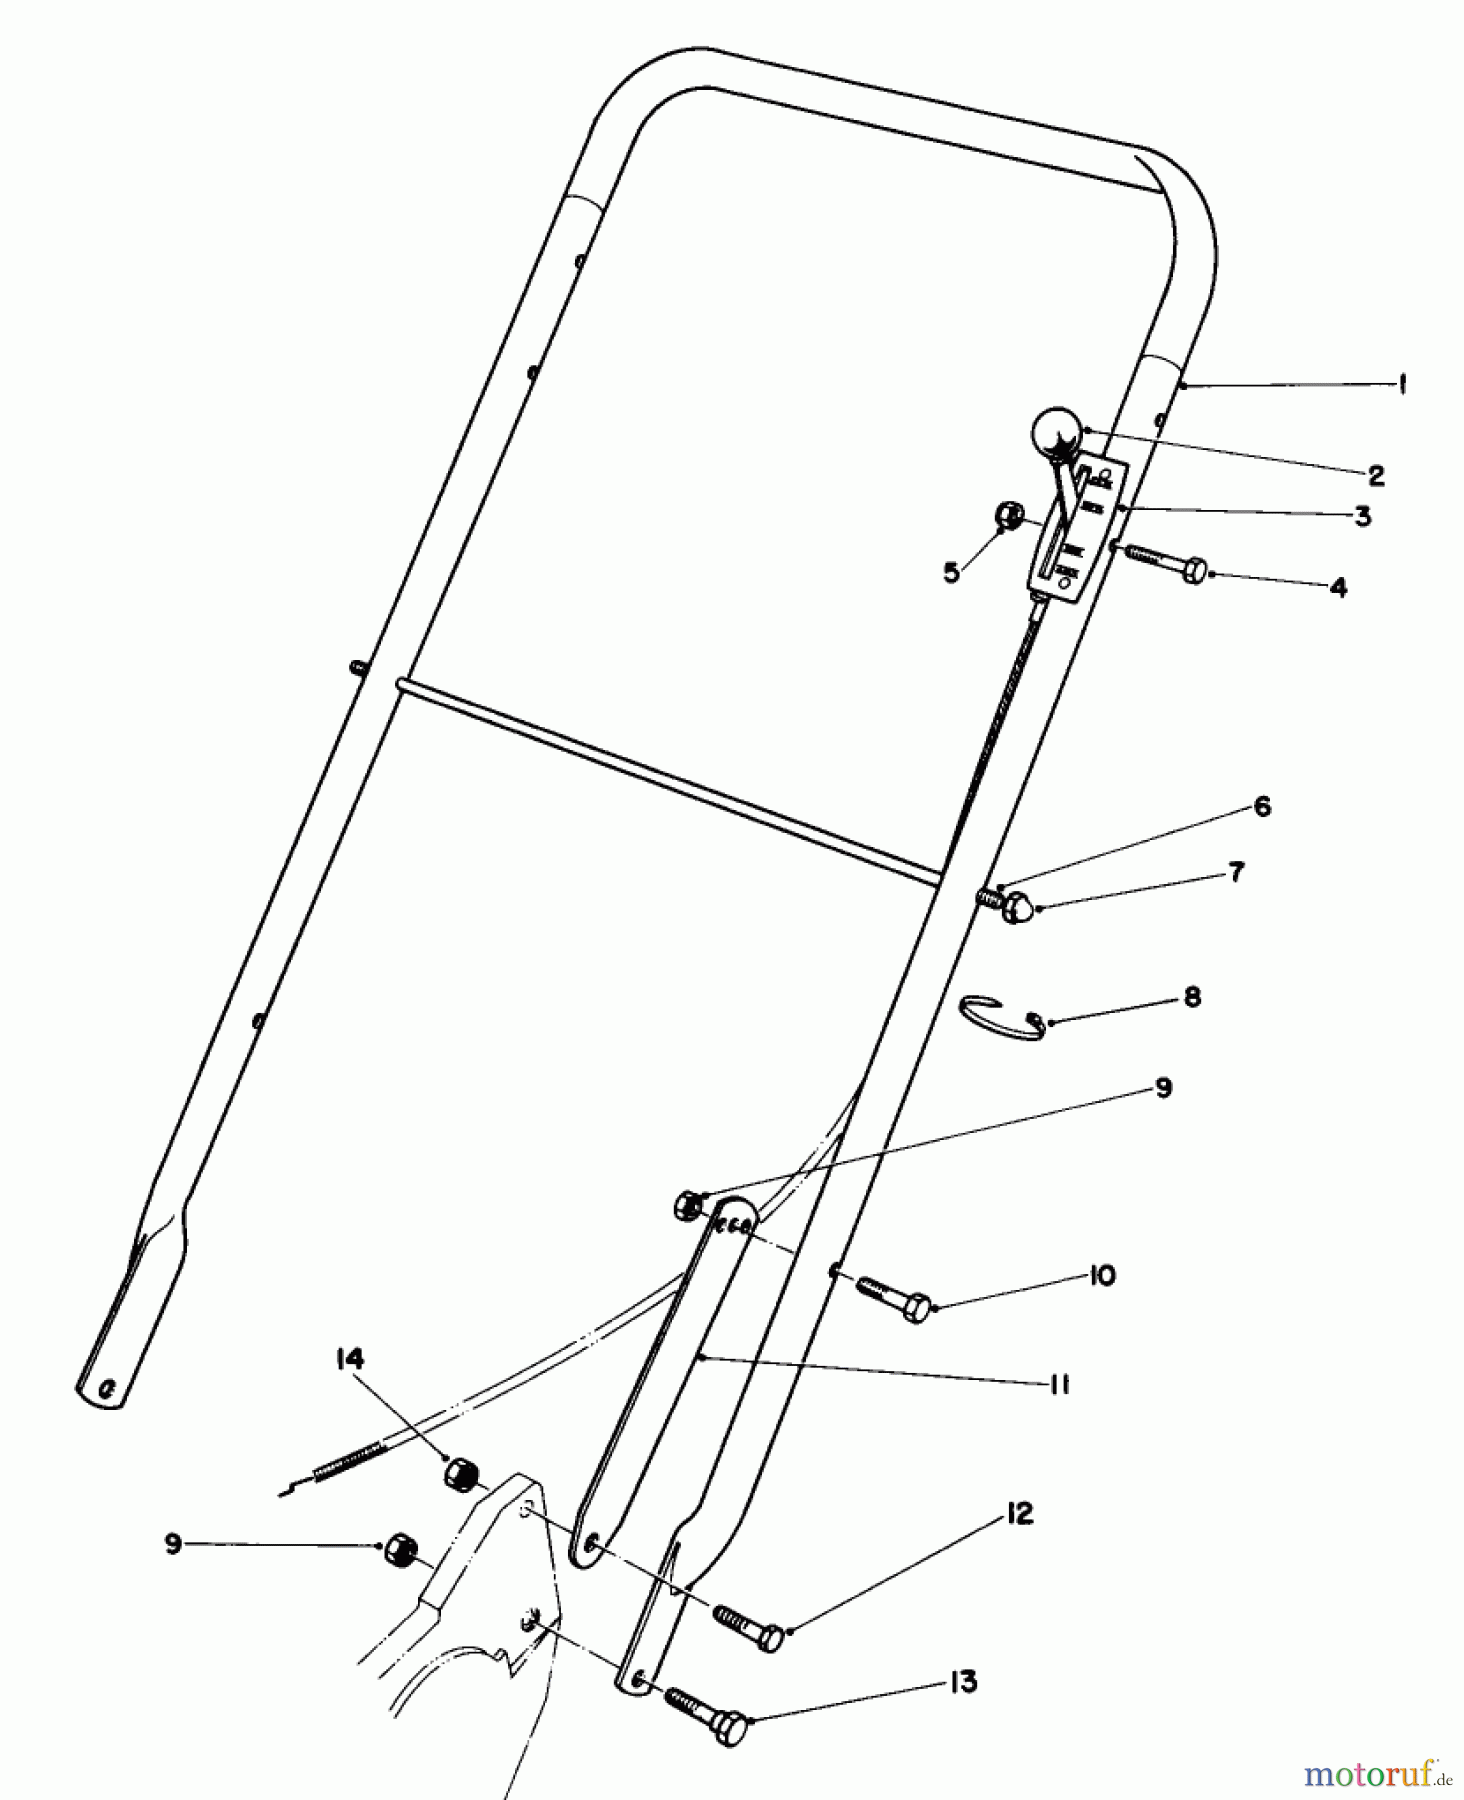  Toro Neu Mowers, Walk-Behind Seite 2 22020 - Toro Lawnmower, 1986 (6000001-6999999) HANDLE ASSEMBLY (MODEL 22015)